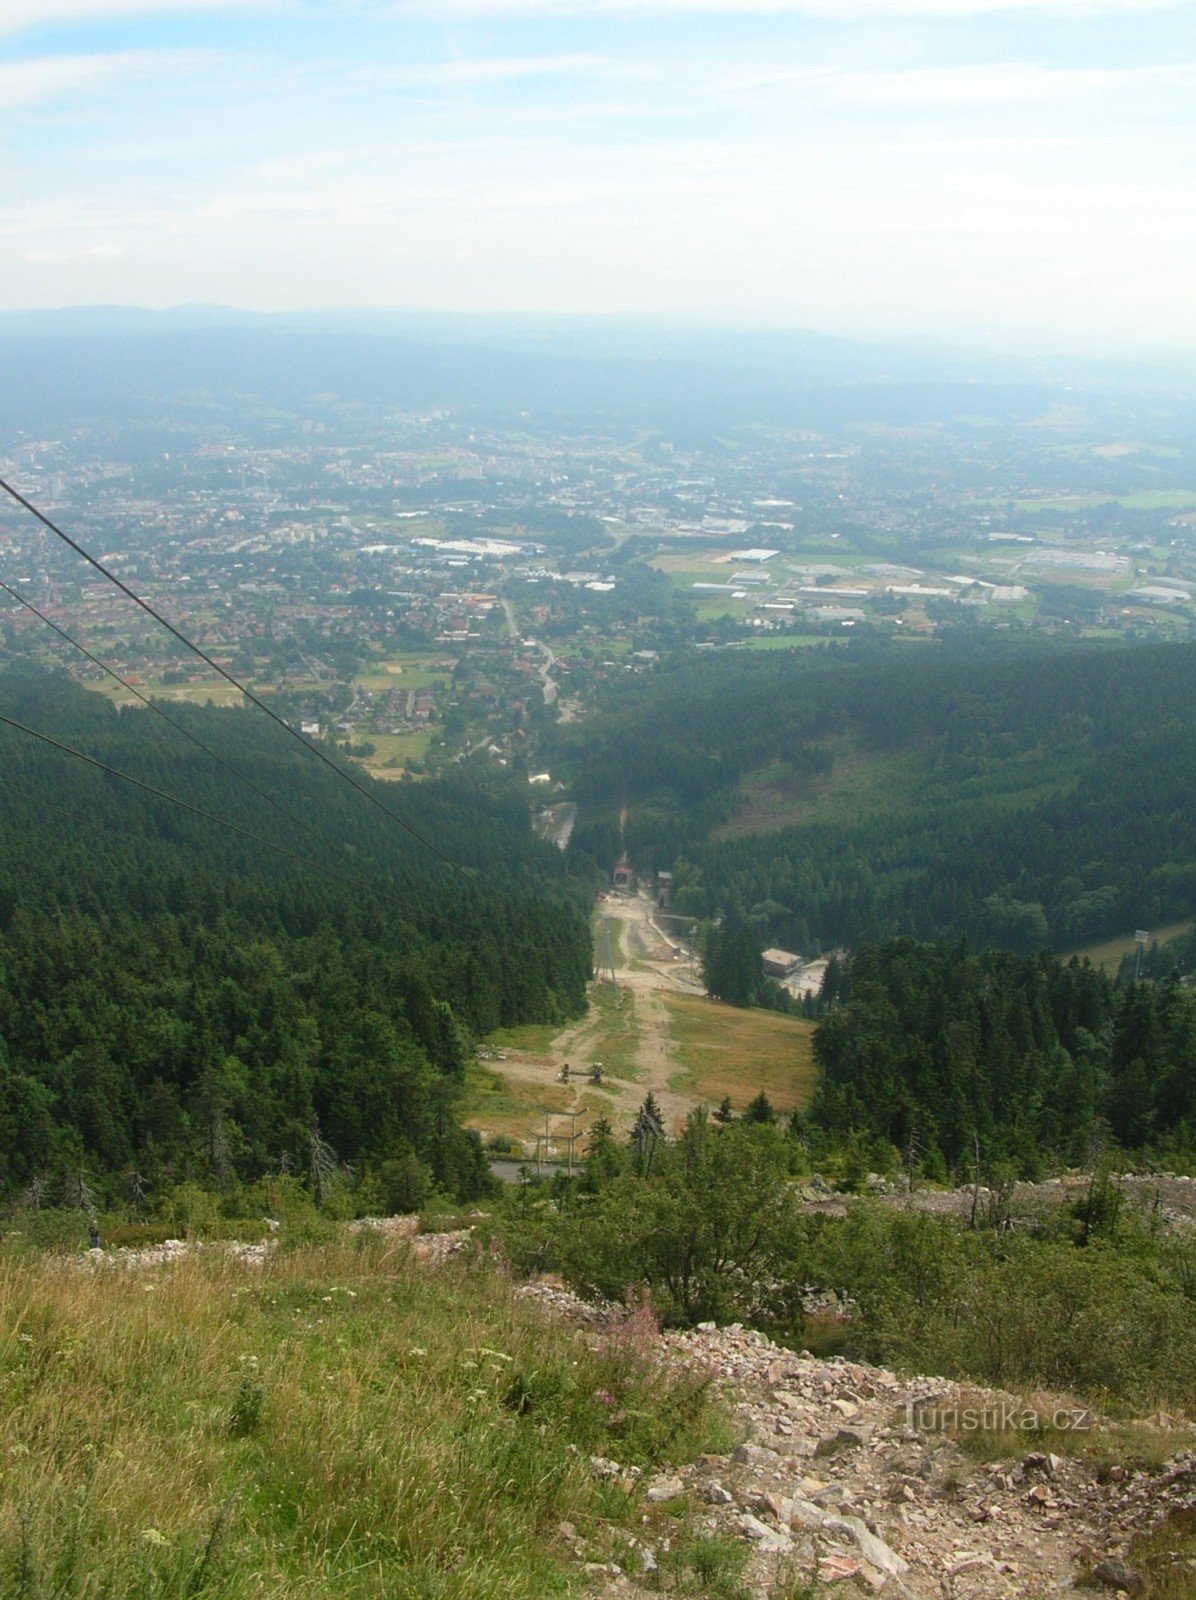 Ještěd - näkötorni Rašovka - Liberec